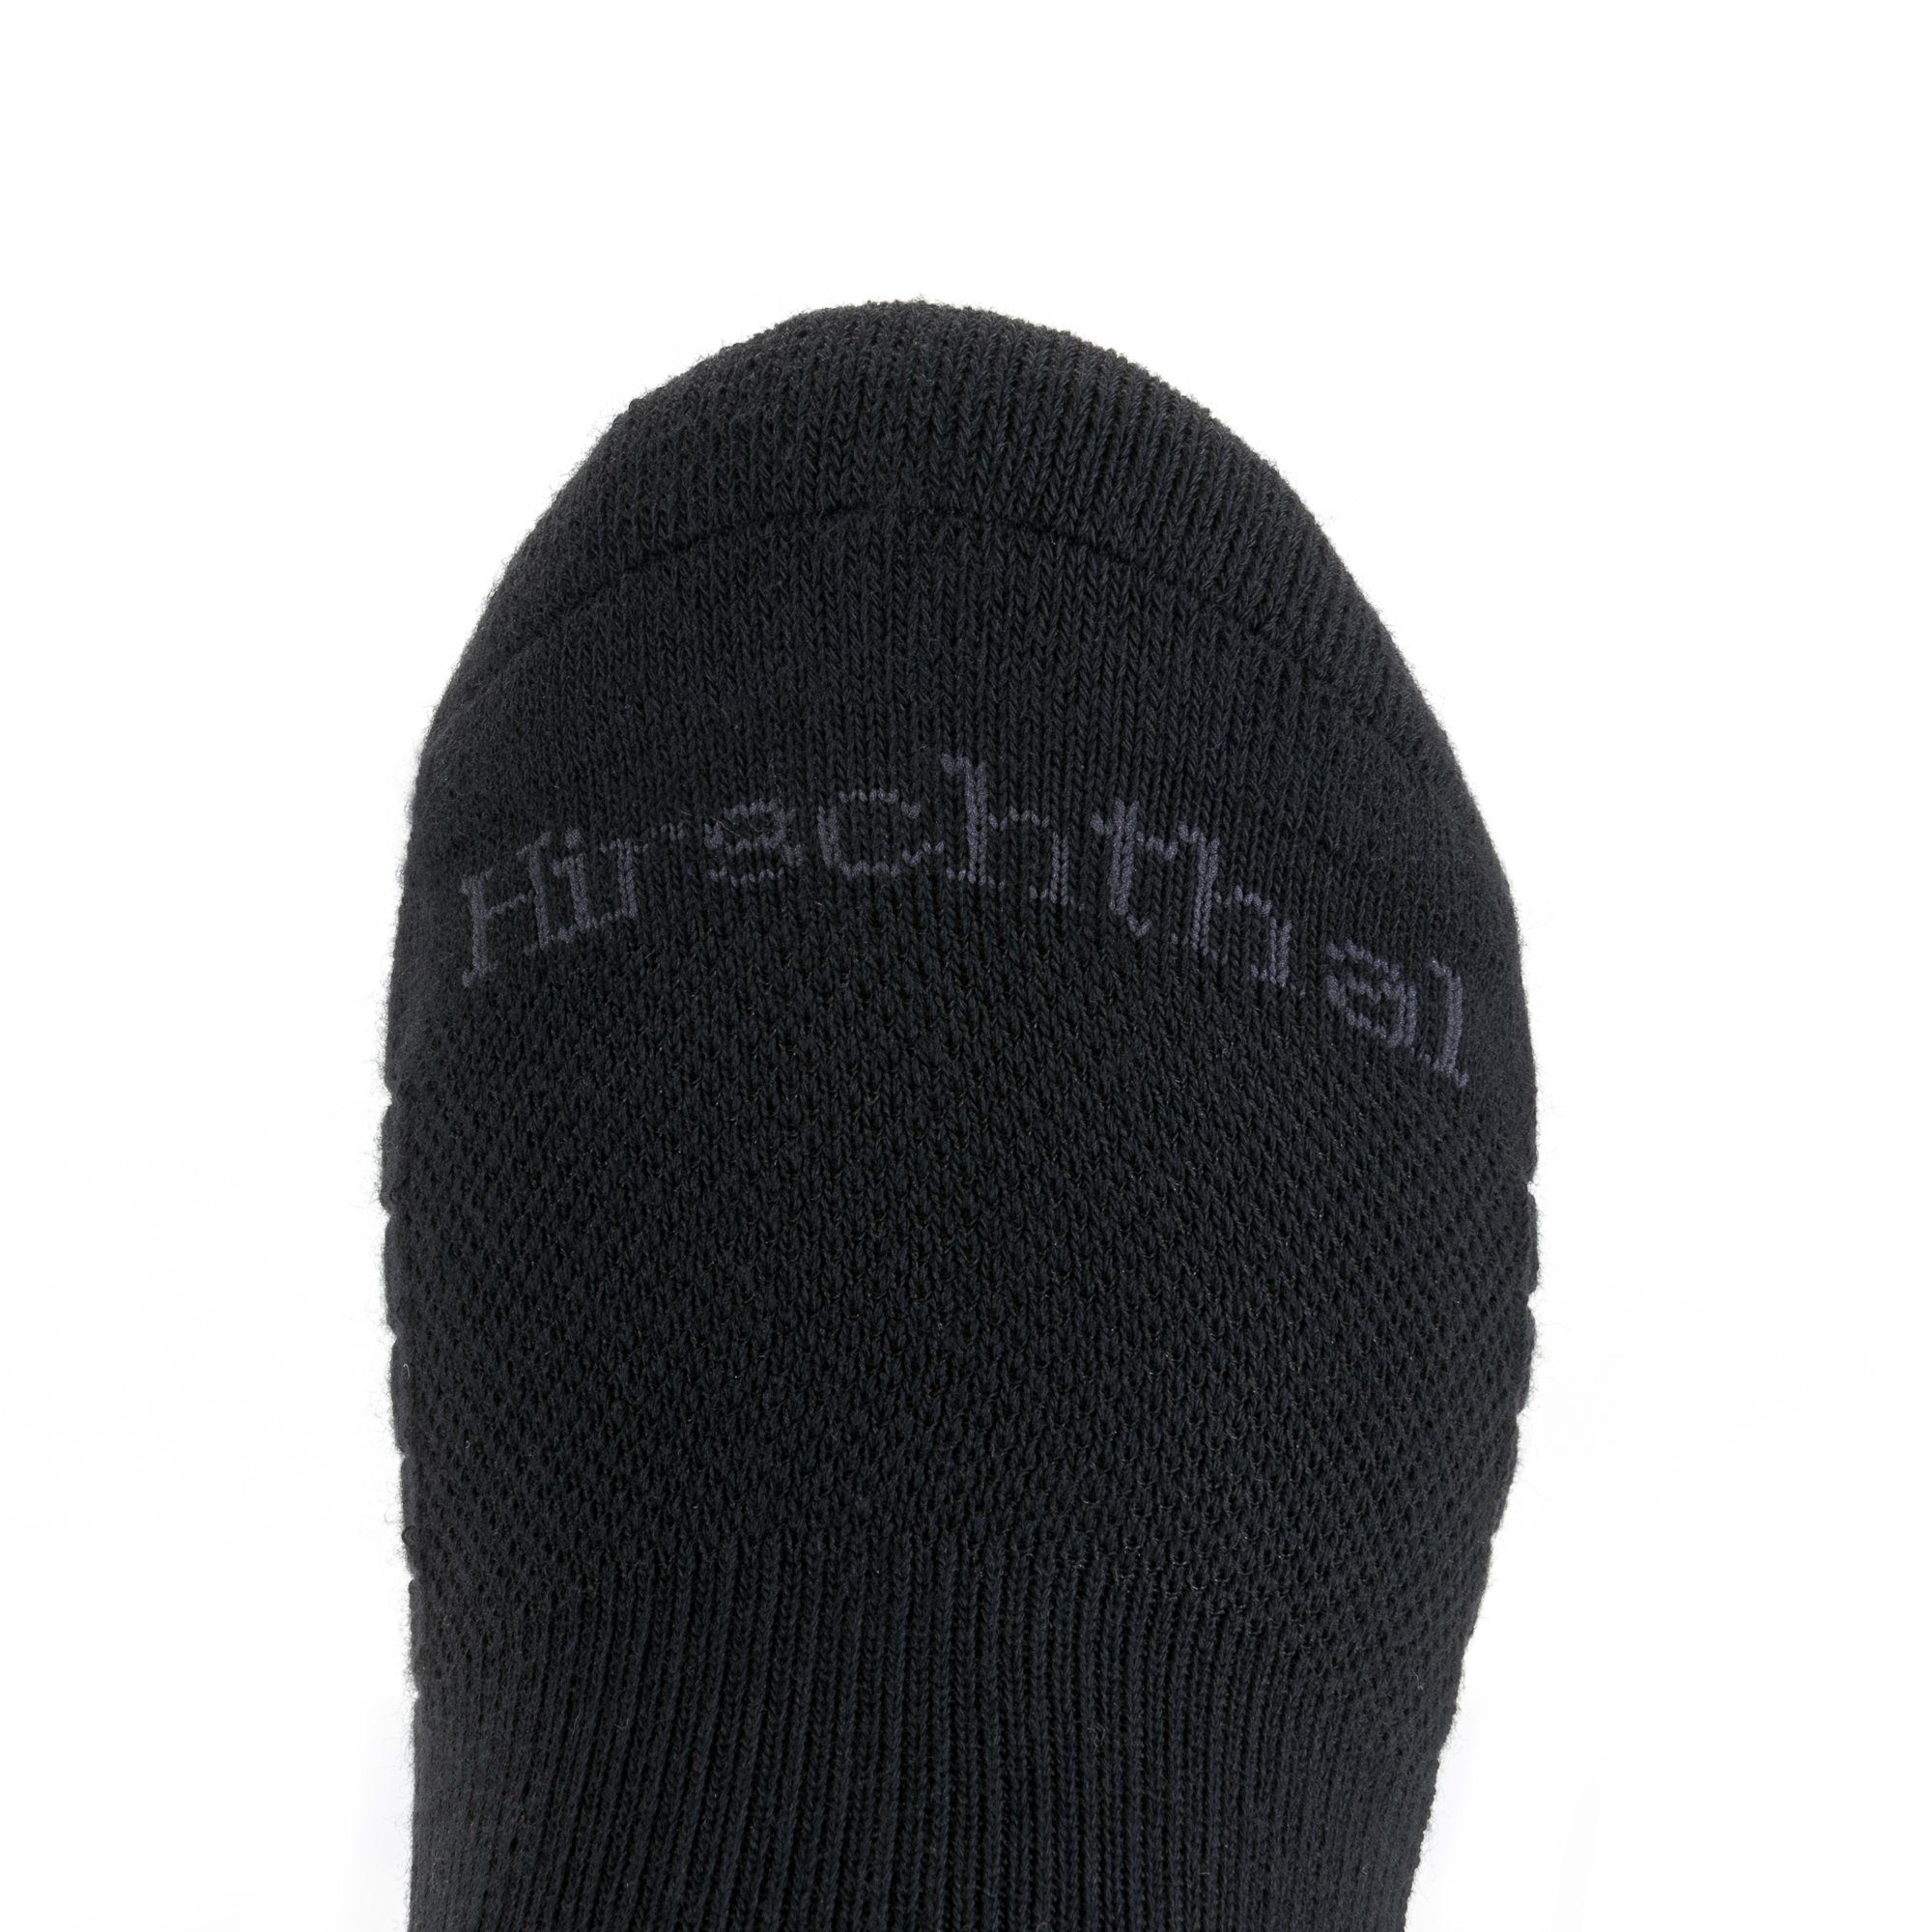 Hirschthal Funktionssocken 2, 4, Schwarz Atmungsaktiv (2-Paar) Funktionssocken Sportsocken Paar Socken 8